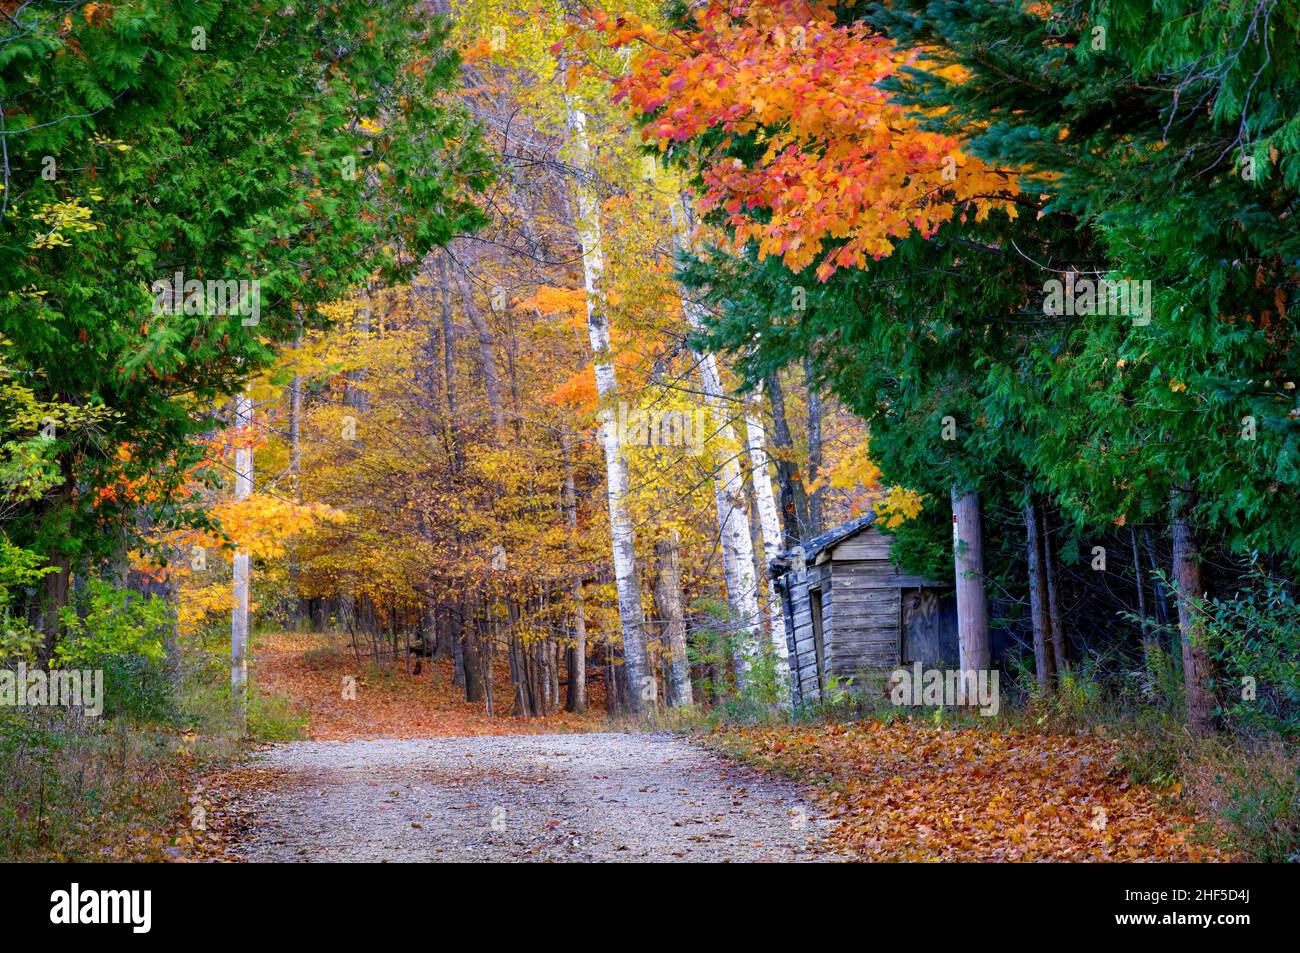 Ein Beispiel für die jährliche Herbst-Farbanzeige, die jeden Herbst in Door County Wisconsin passiert, das ein wichtiges Touristenziel ist. Stockfoto